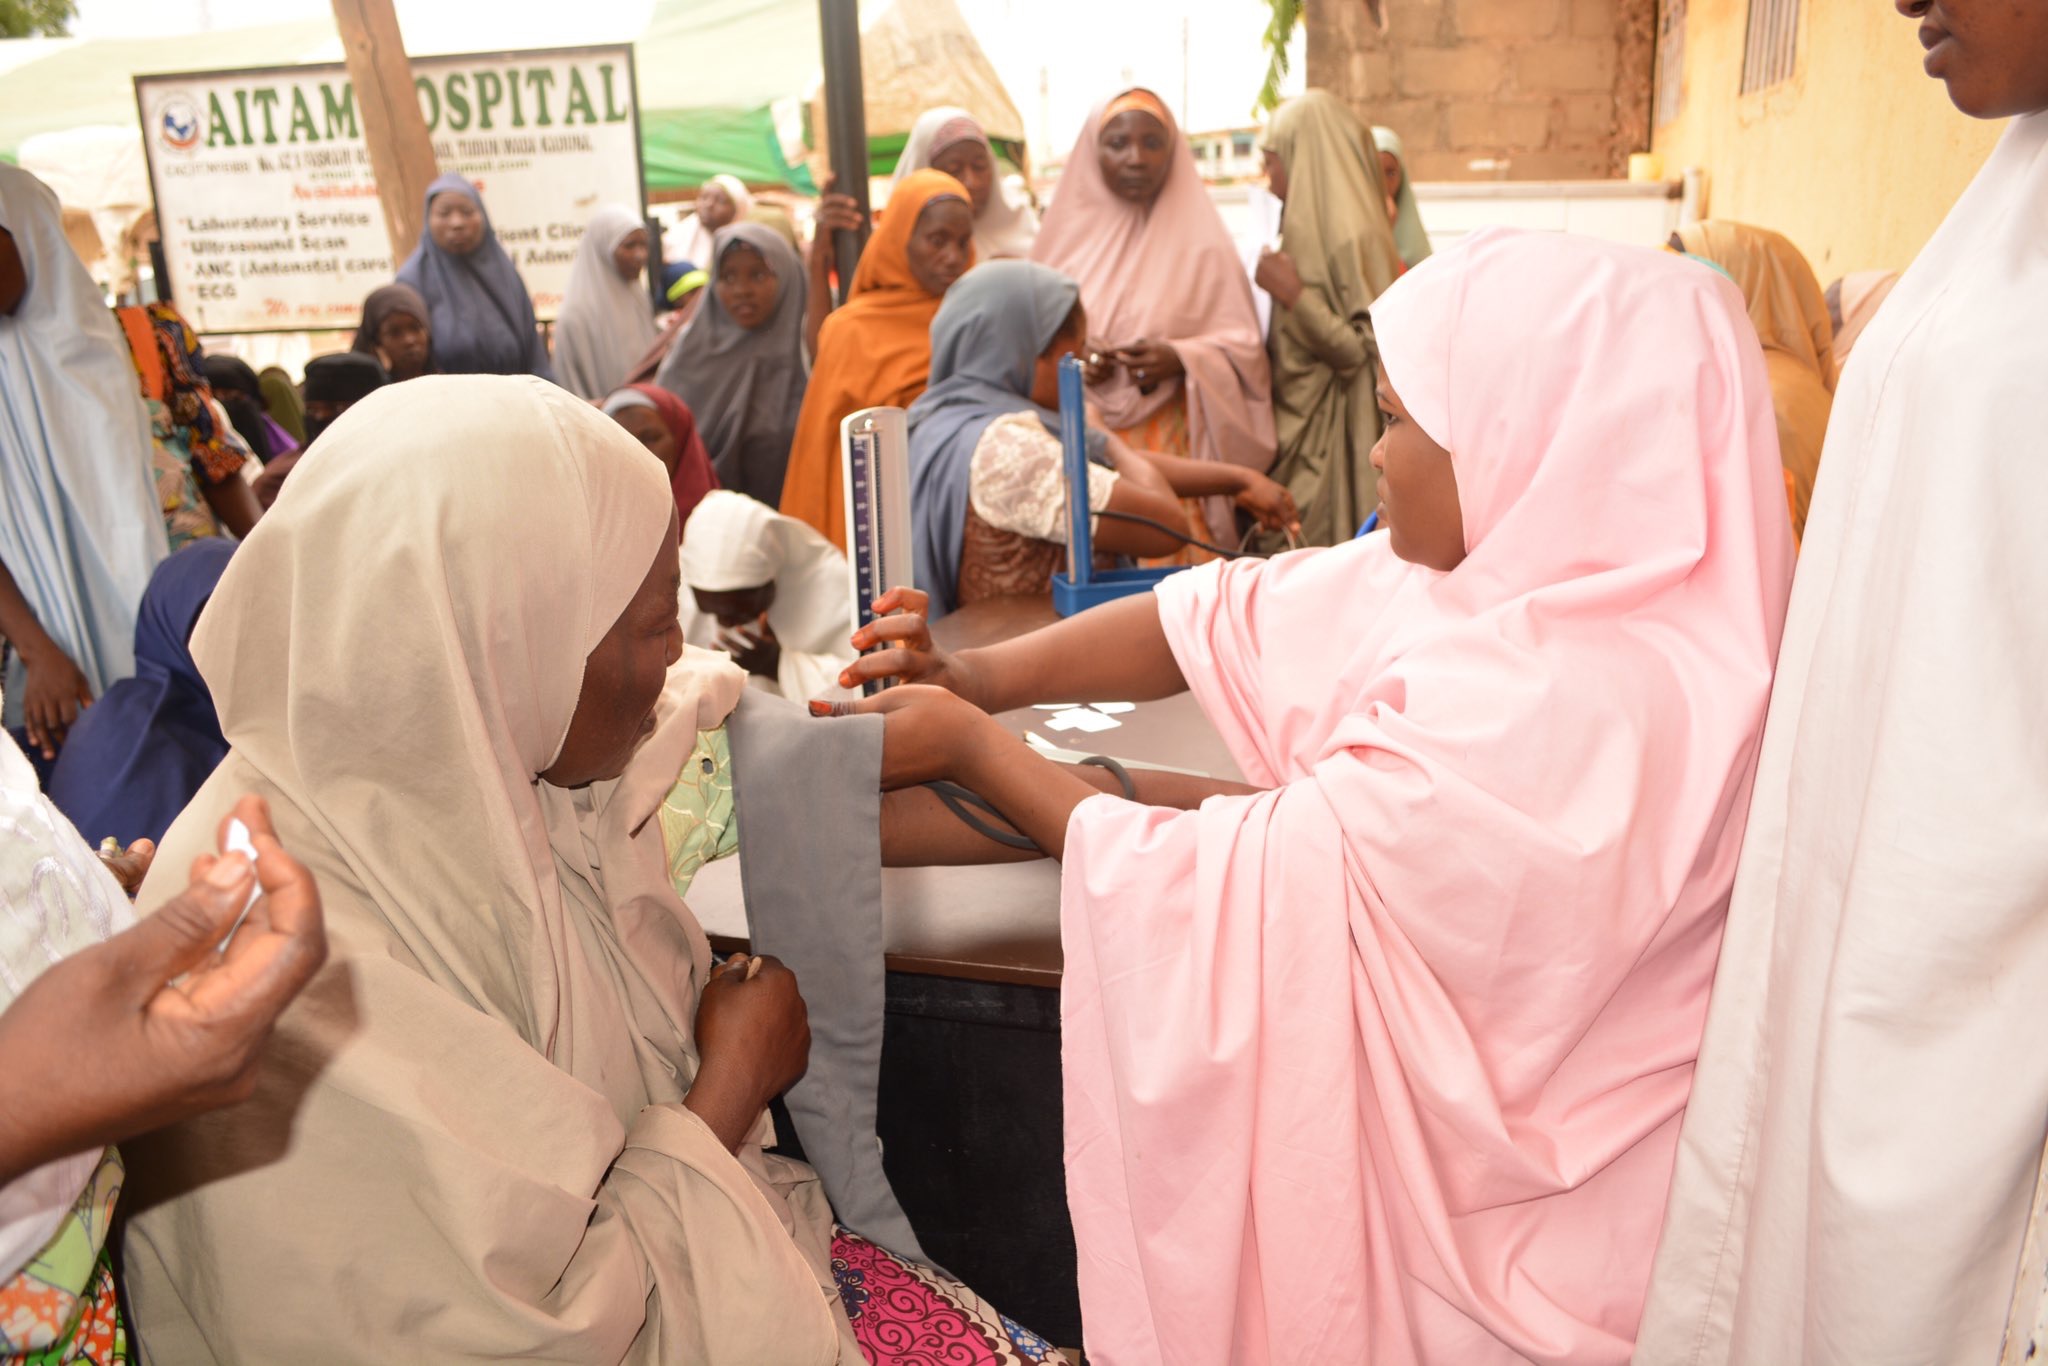 رابطة العالم الإسلامي‬ تجري ٤ آلاف عملية جراحية في ‫نيجيريا‬ ضمن مبادراتها الصحية في القارة الأفريقية، حيث استفاد مليون شخصٍ من سلسلة المشروعات الطبية التي شملت مخيمات لمكافحة العمى ومعالجة الأيتام وإنشاء مستشفى خيري    